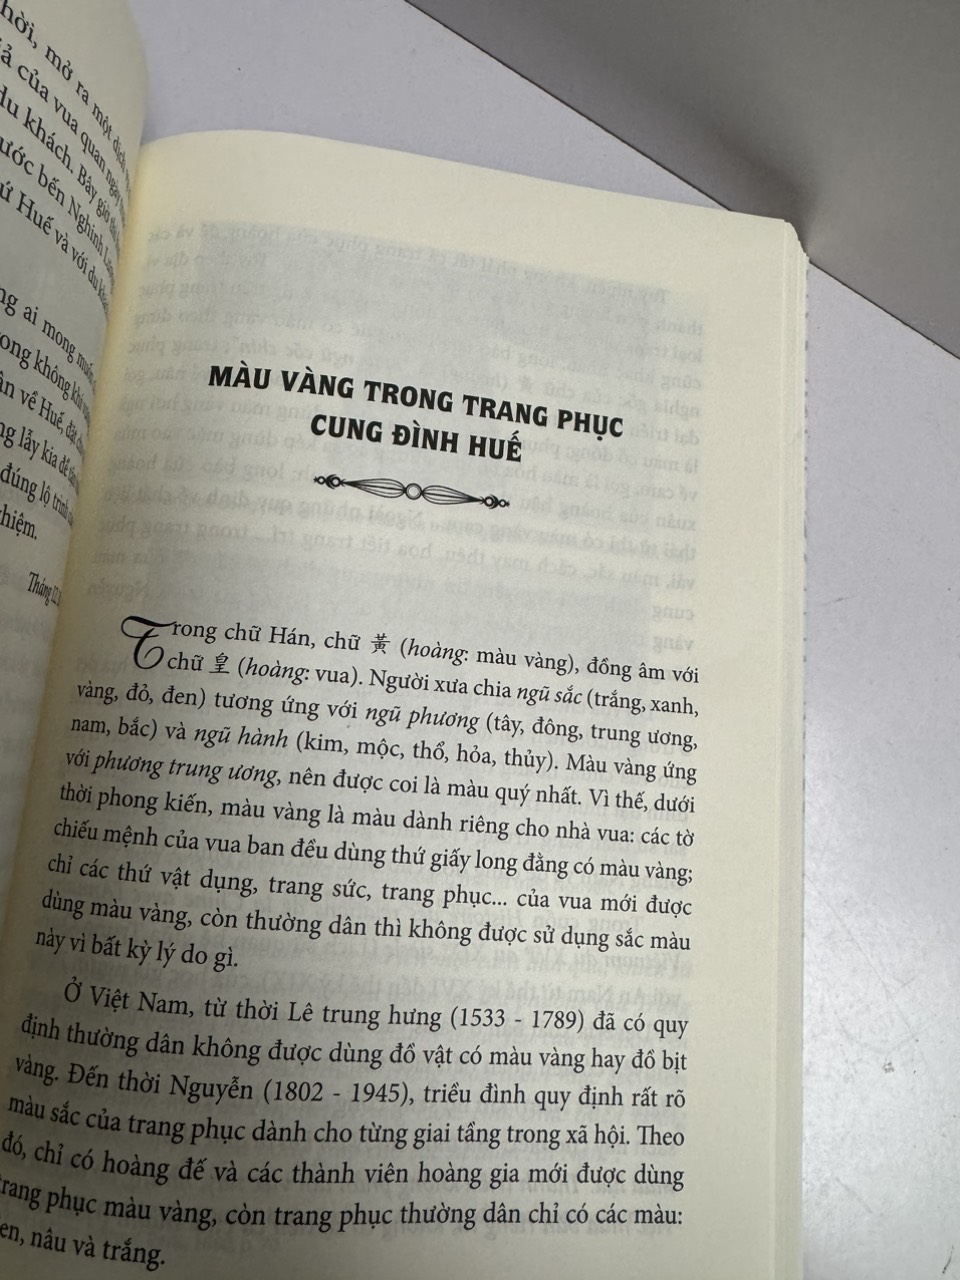 HUẾ - TRIỀU NGUYỄN: MỘT CÁI NHÌN – Trần Đức Anh Sơn – Trường Phương Books - NXB Thế Giới